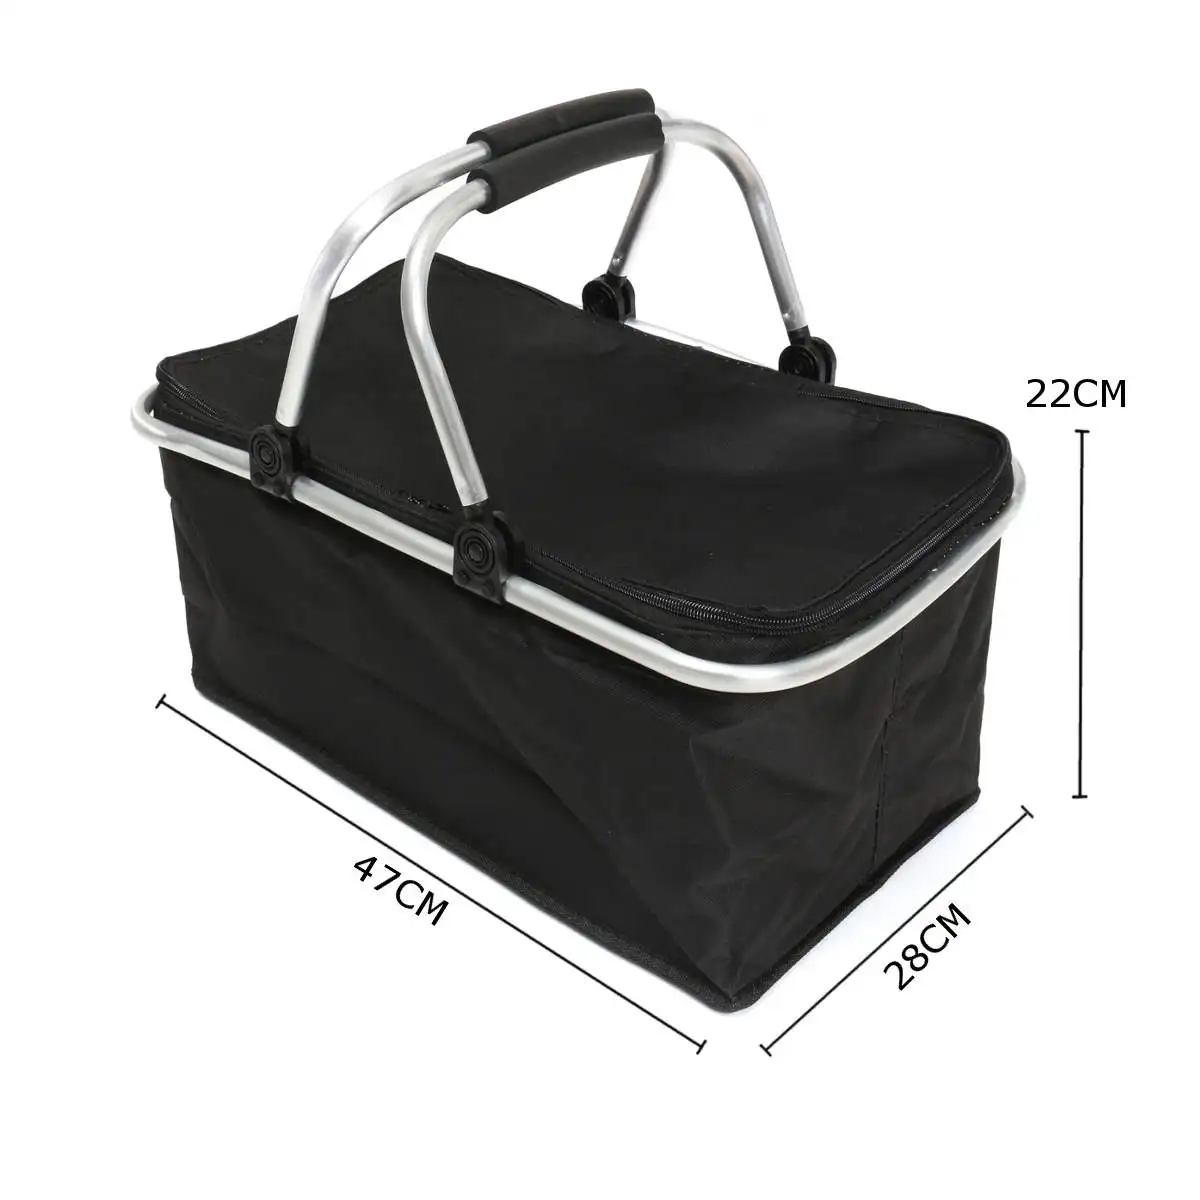 46 см x 28 см x 24 см 30 л складной для пикника, кемпинга, изолированный кулер, крутой корзина для хранения, сумка, коробка, наружные сумки для пикника